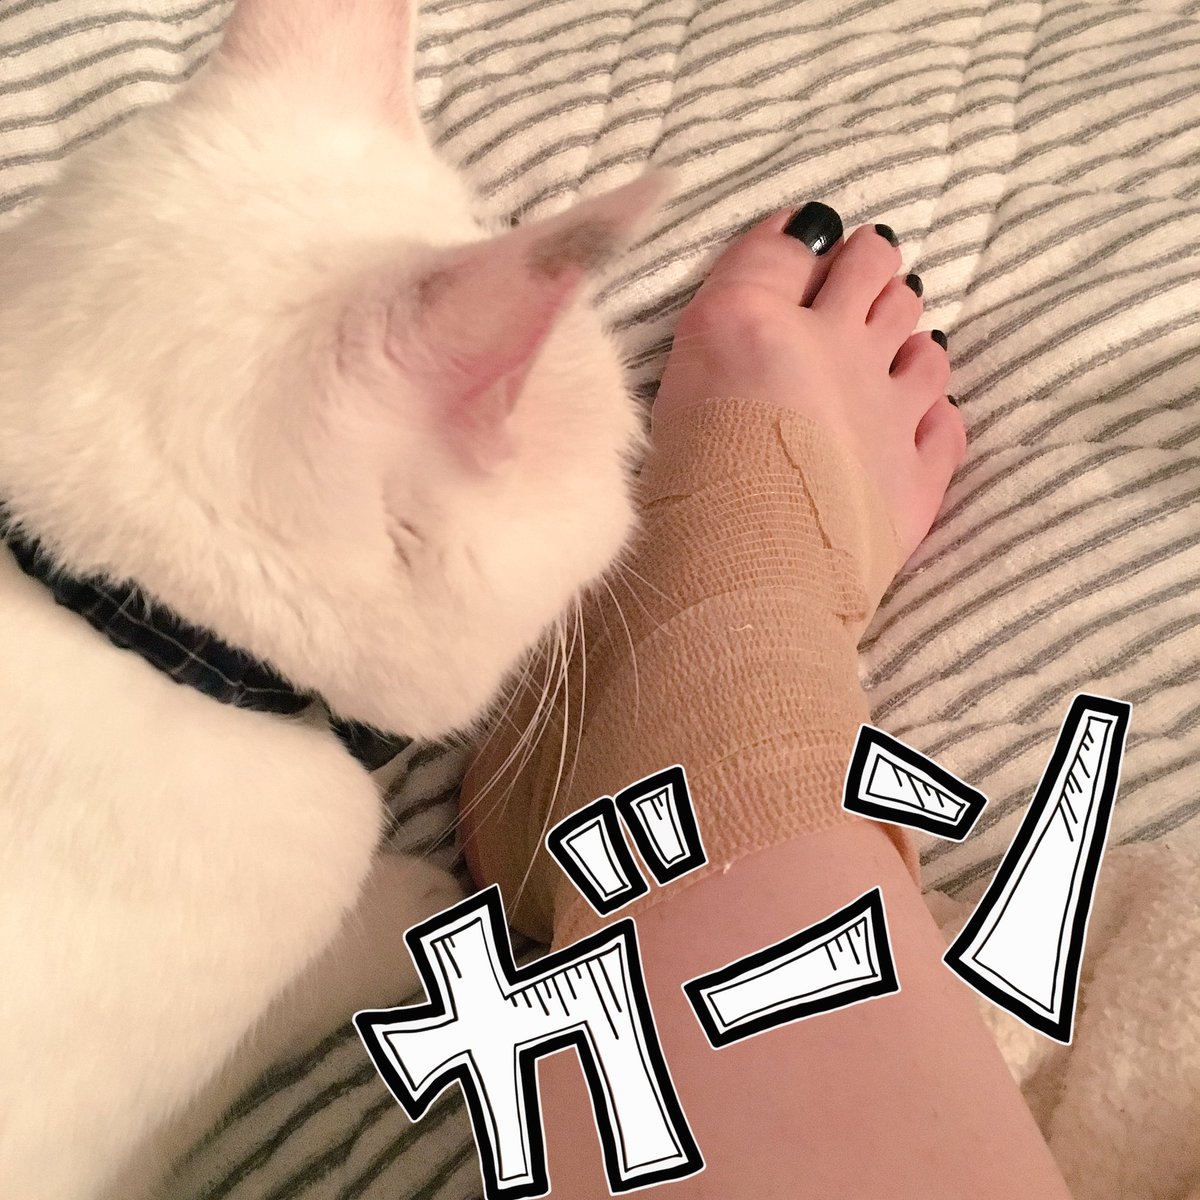 藤田綾乃 Ayanofujita サリーちゃん足を すみません アキレス腱周囲炎で湿布くさいのに この猫はなんで嗅ぎに来るのでしょう